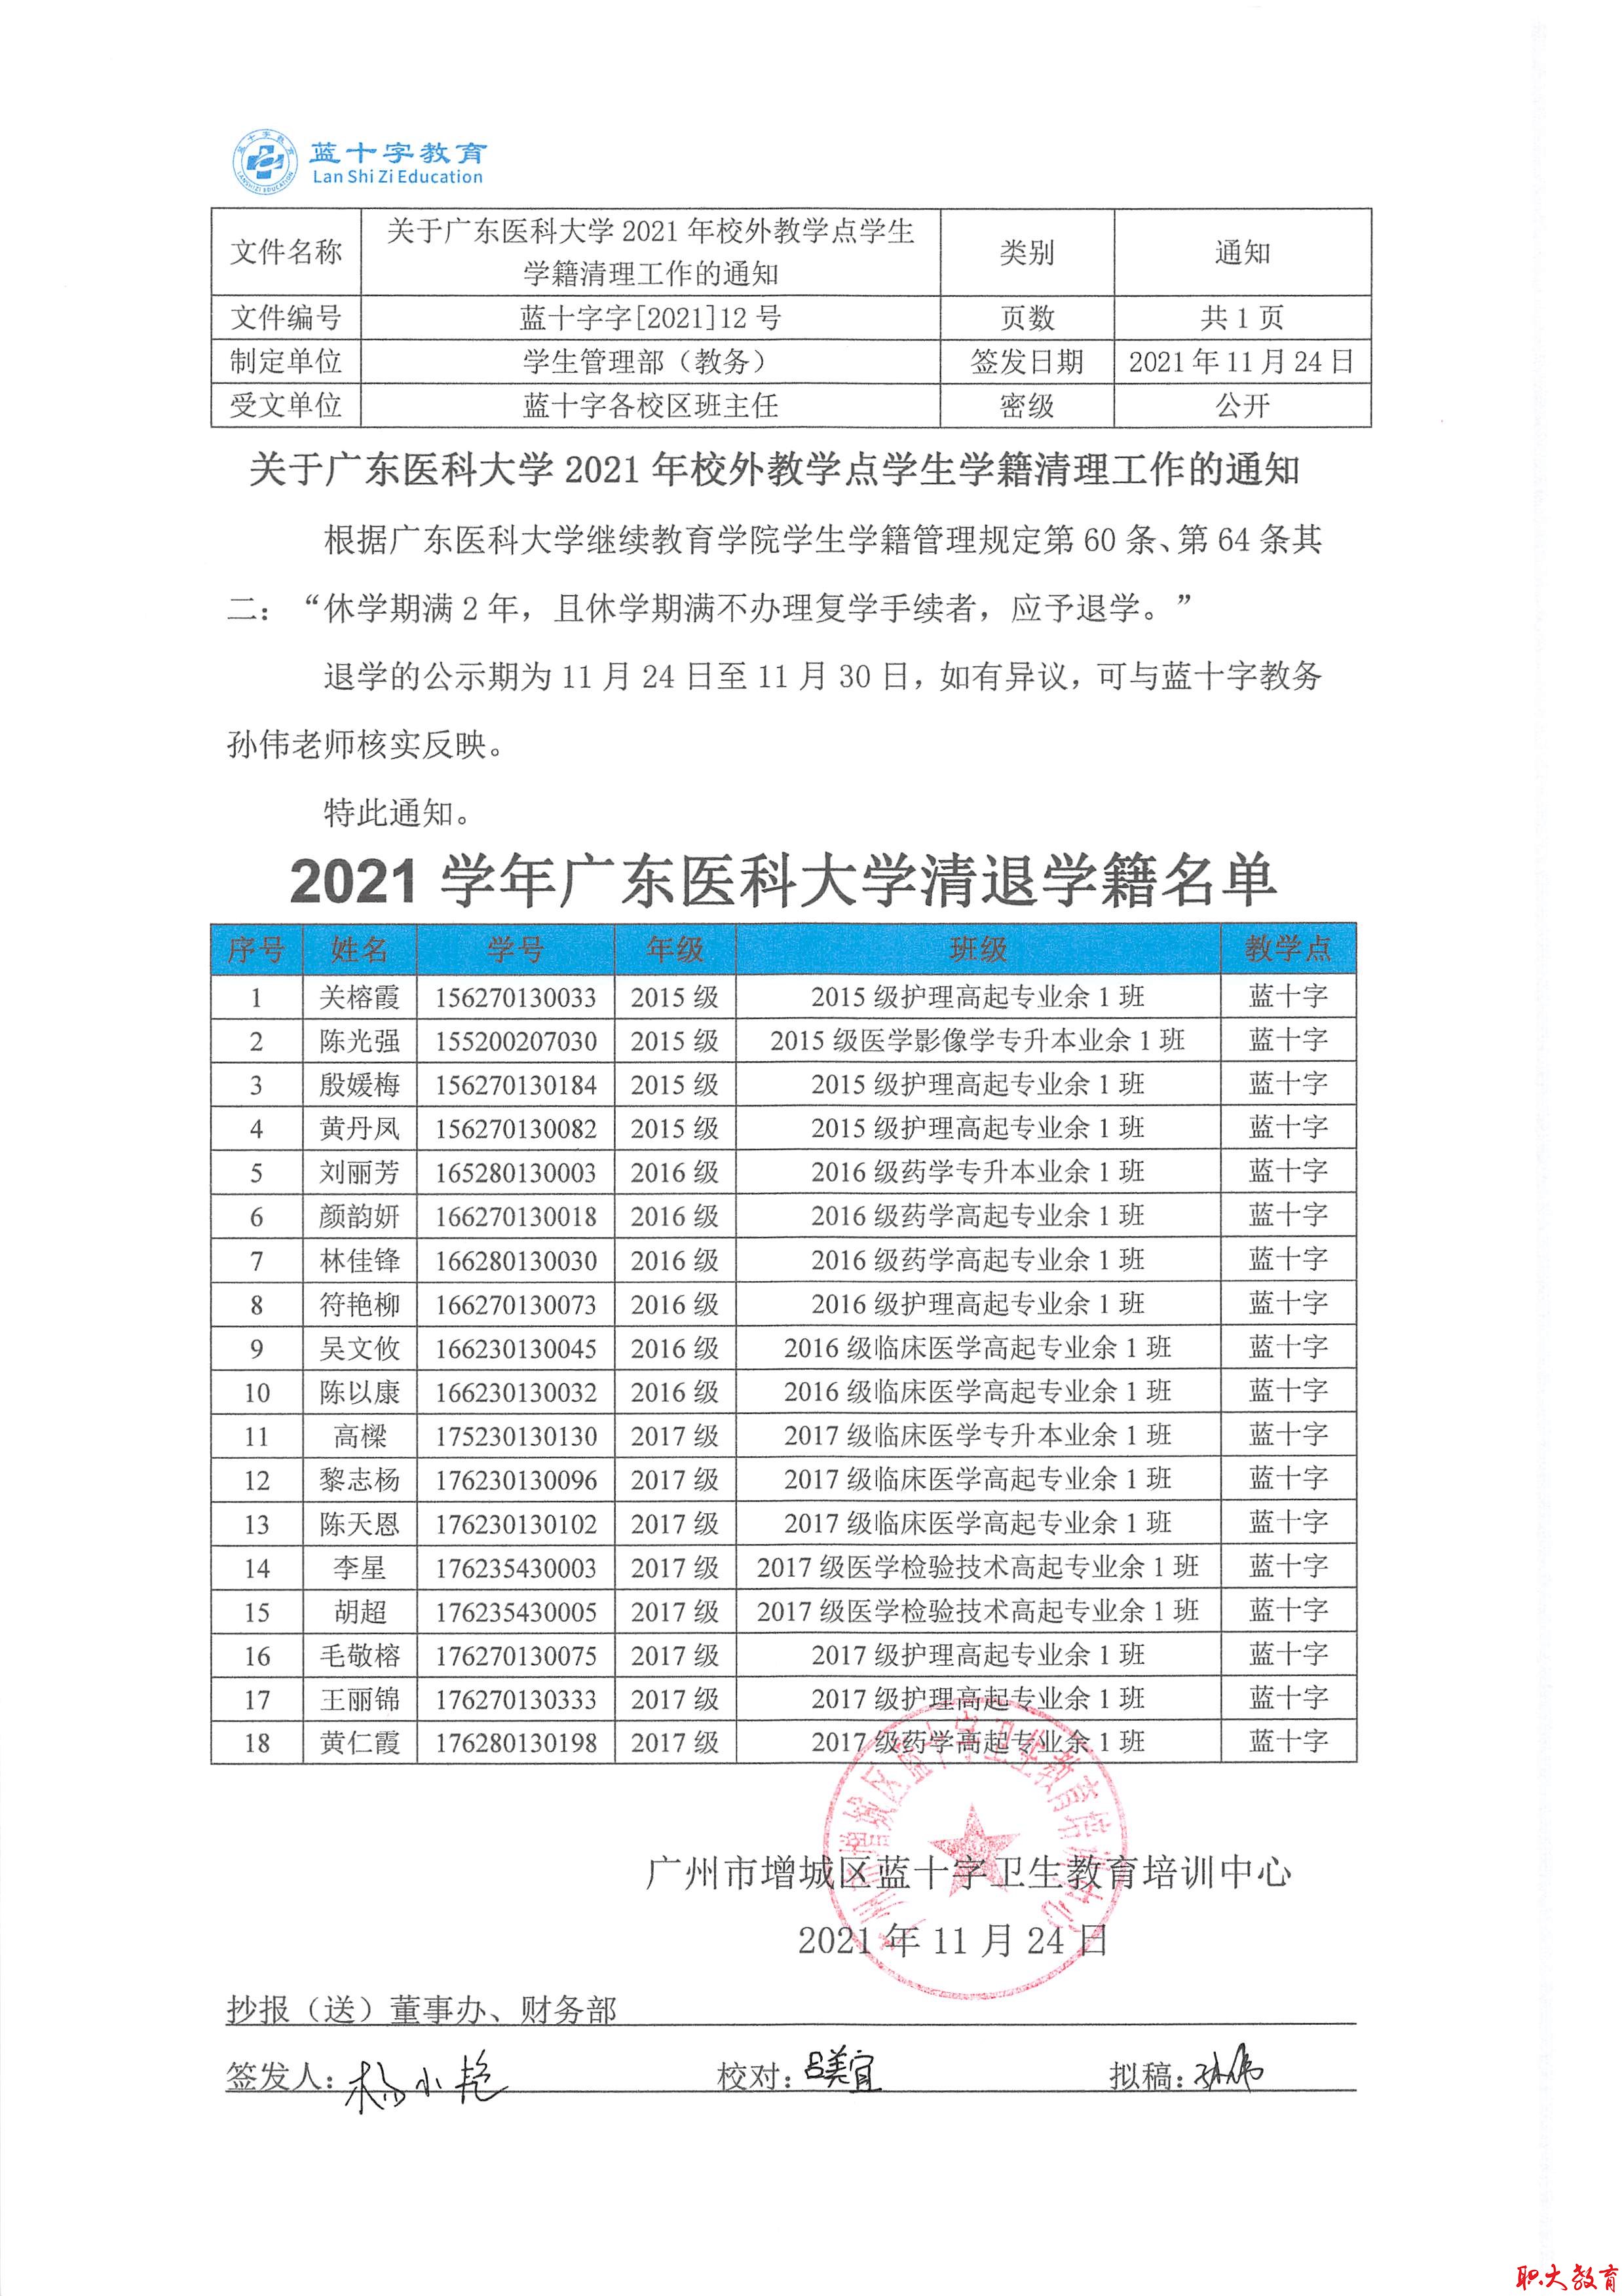 关于广东医科大学2021年校外教学点学生学籍清理工作的通知